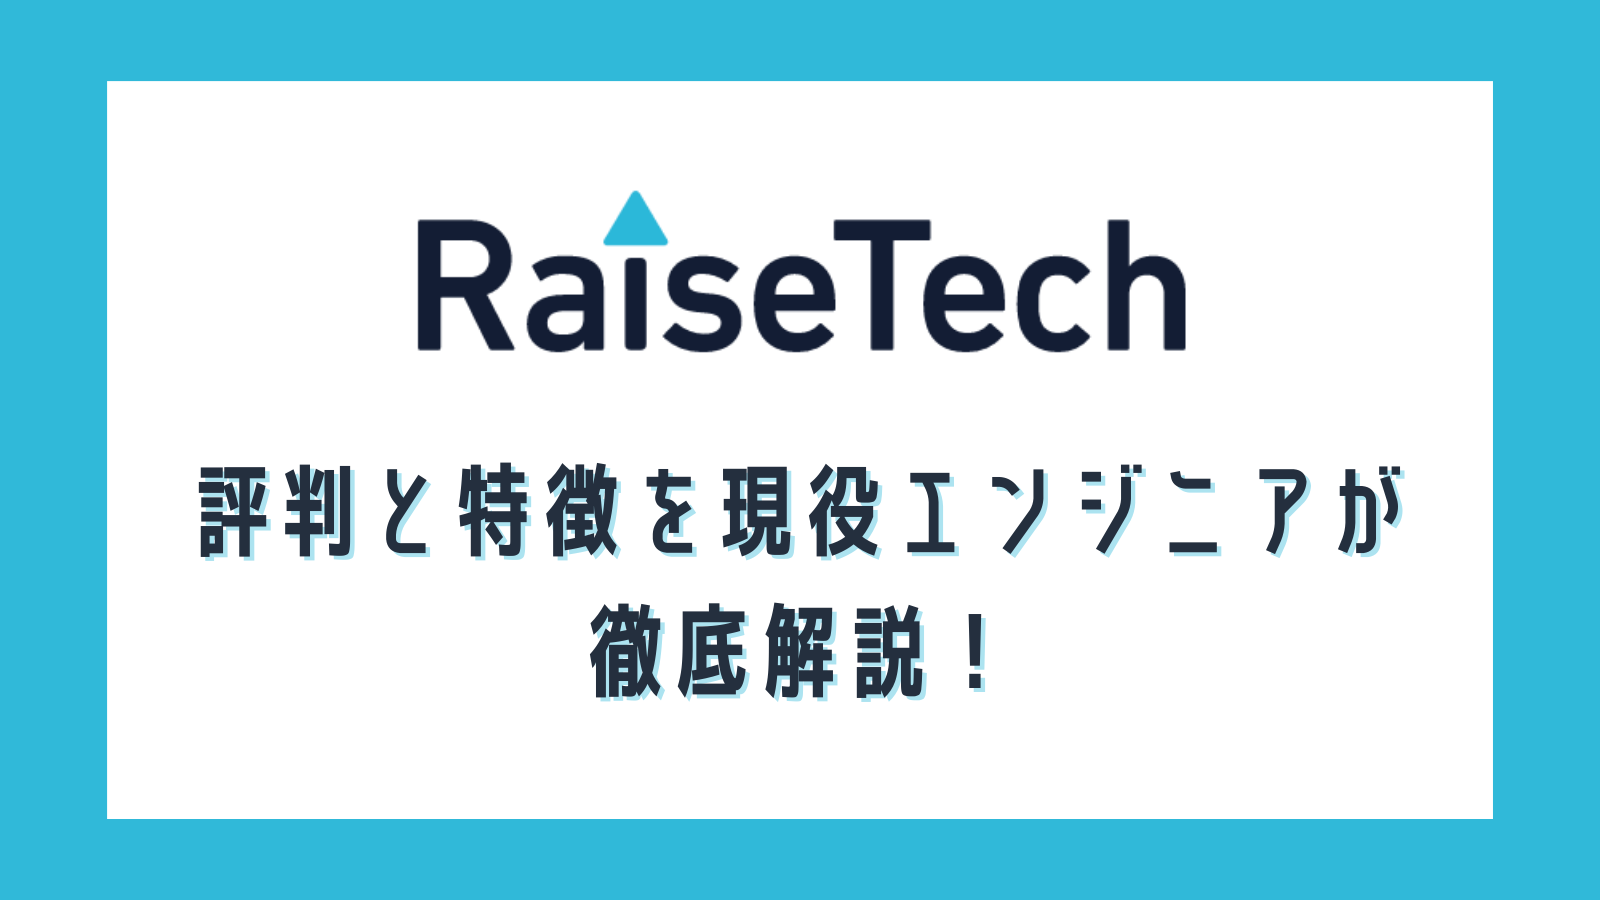 RaiseTech(レイズテック)のAWSコースの評判や特徴を徹底解説